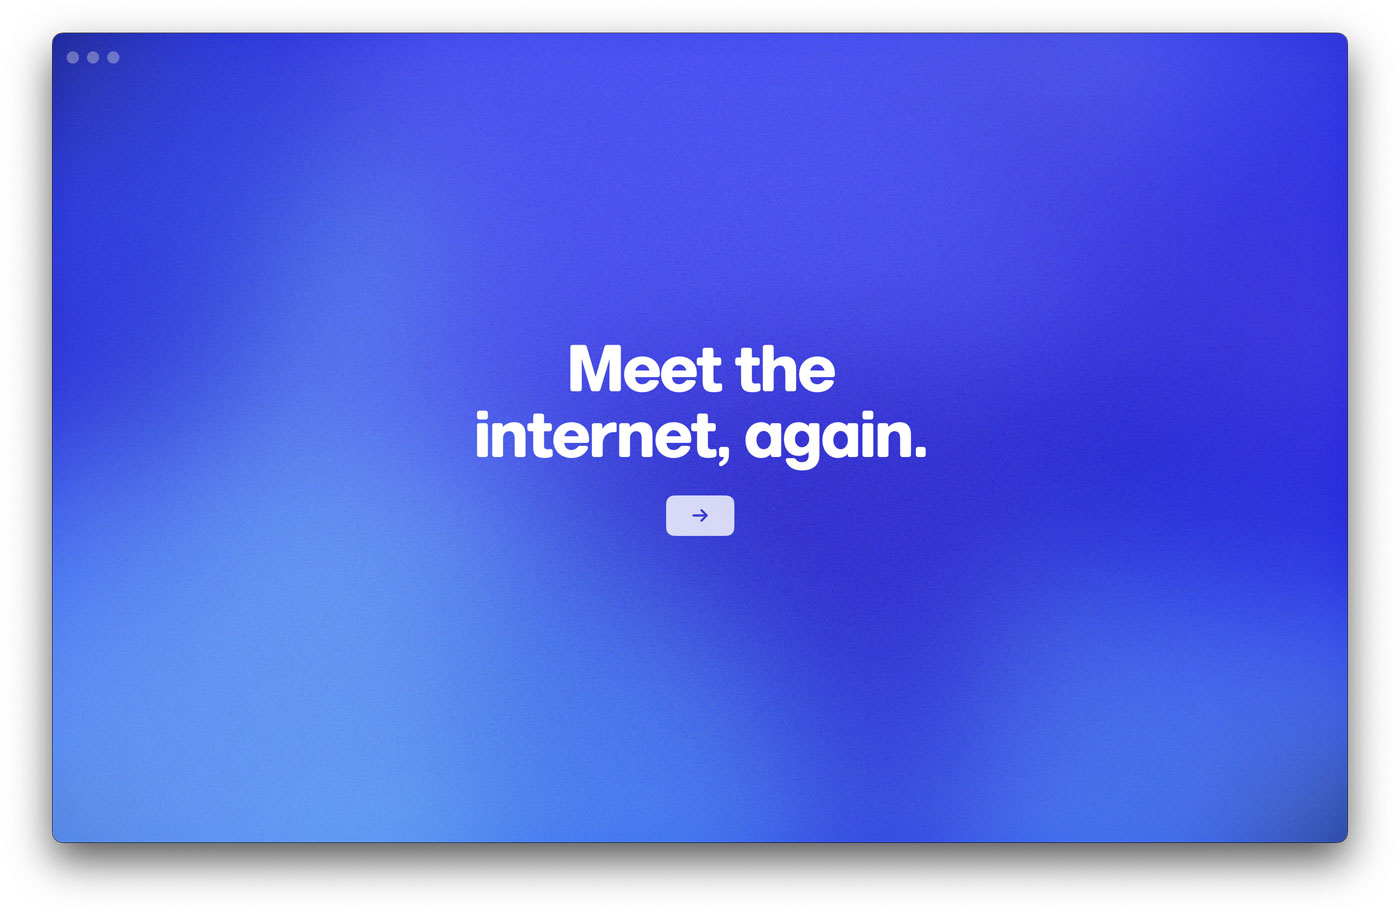 Primera pantalla del onboarding de Arc: "Meet the internet again".